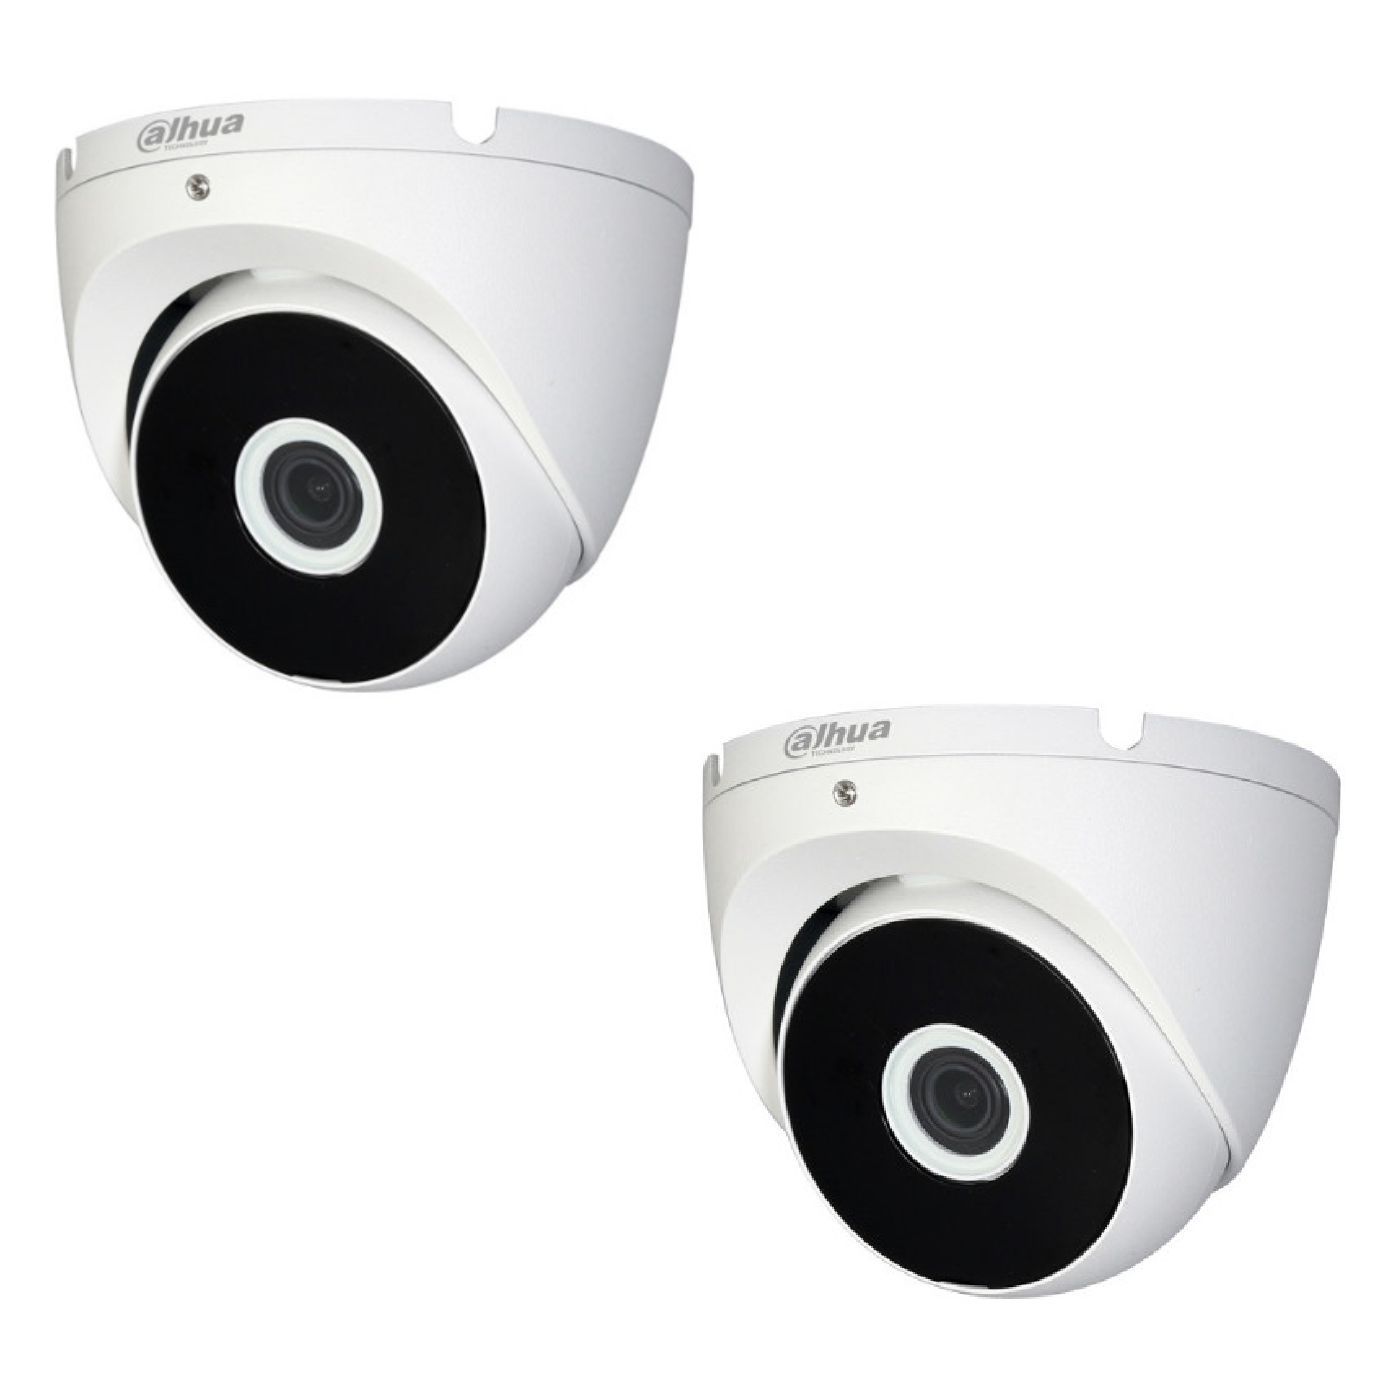 Zestaw monitoringu Dahua Cooper XVR 1TB - z 2 kamerami kopułkowymi Full HD, rejestratorem i dyskiem twardym 1 TB